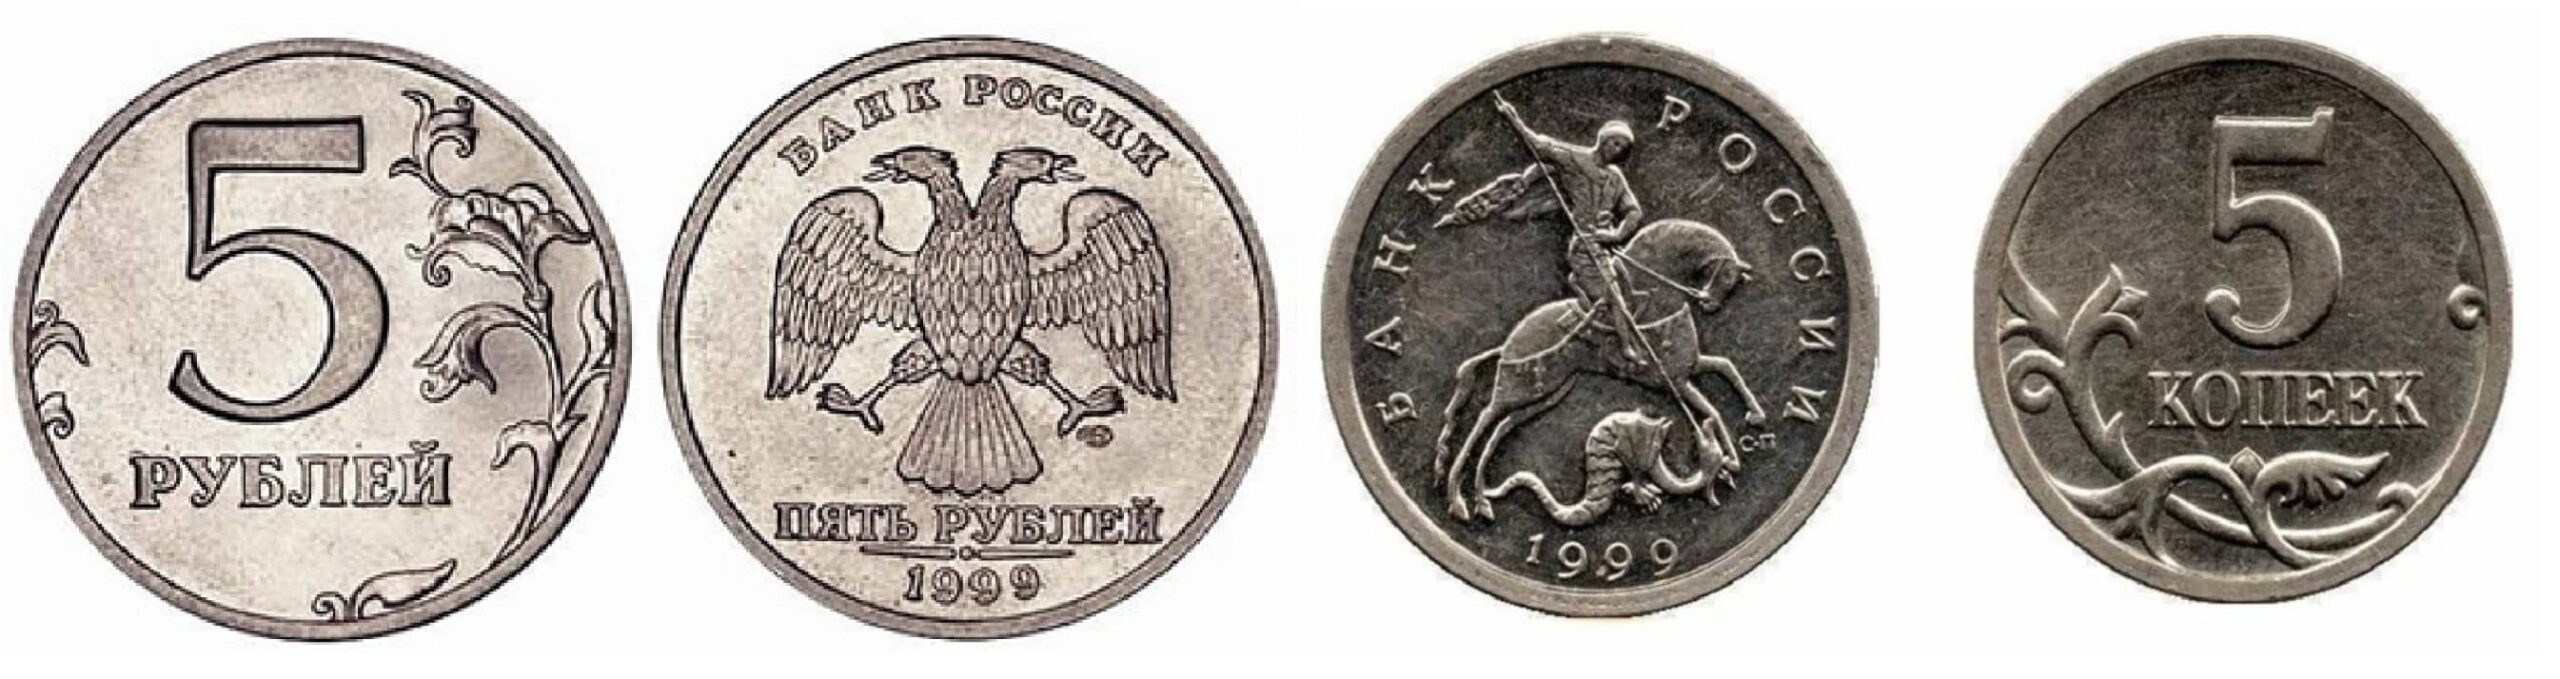 5 Копеек 1999. Привидение монета. Польша 2 гроша 1999 год - герб. 5 рублей 16 года